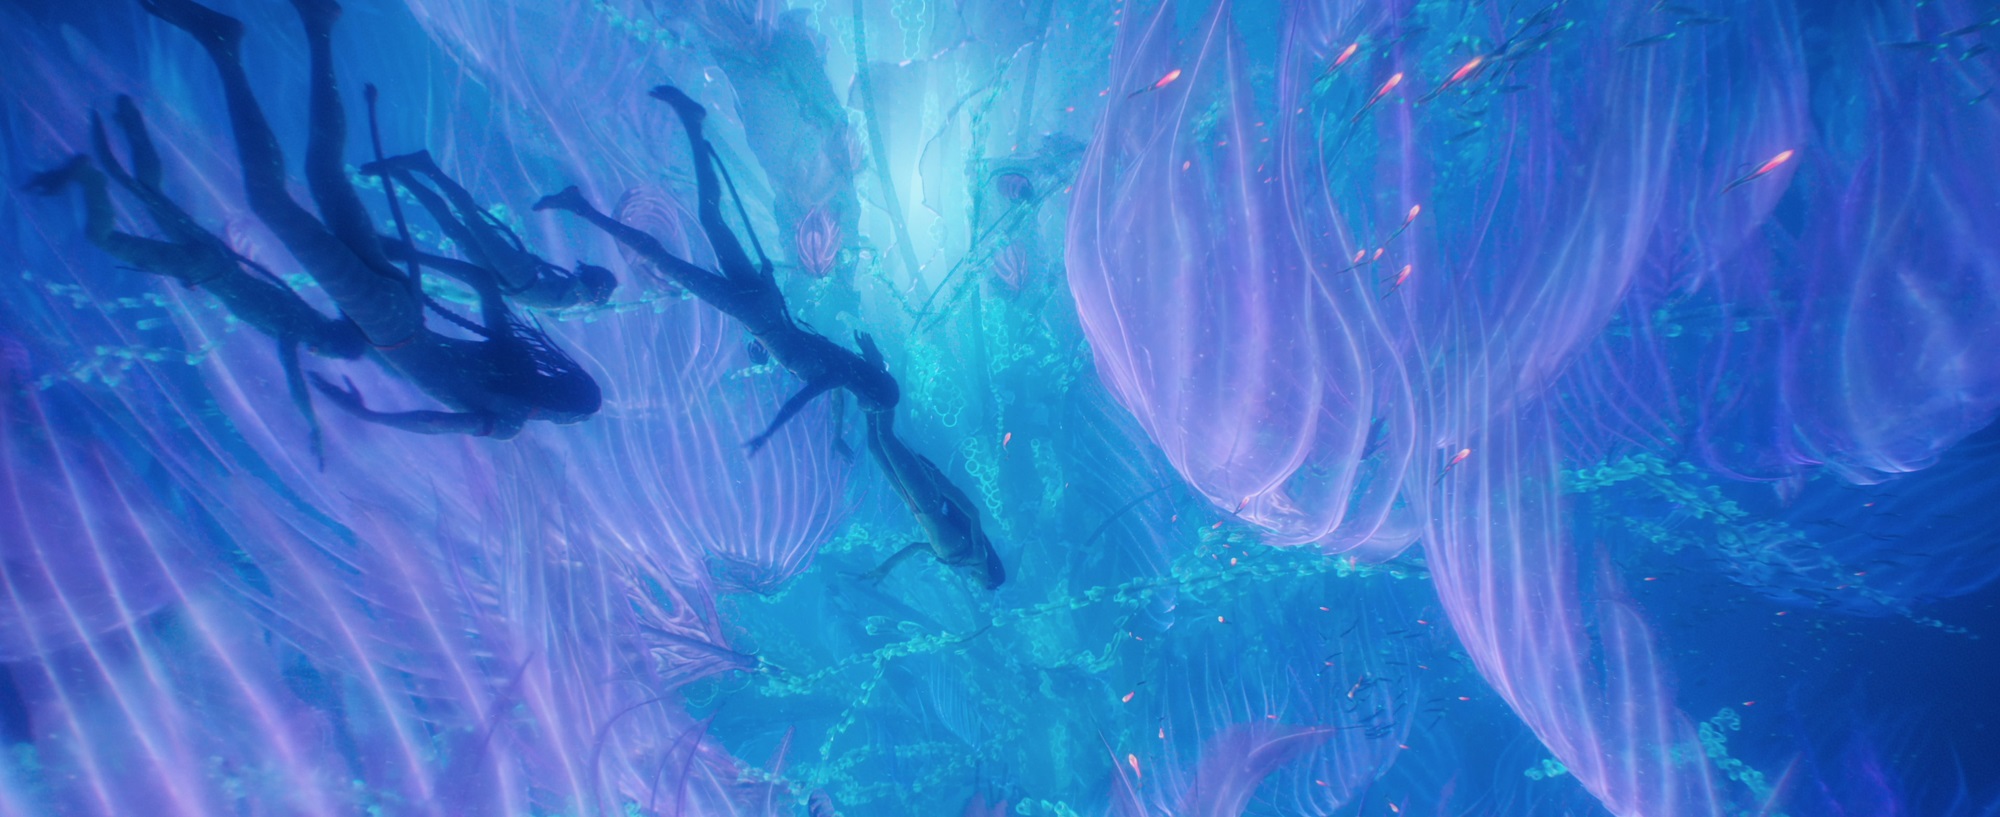 Avatar 2 với những khung cảnh dưới nước càng thêm huyền ảo